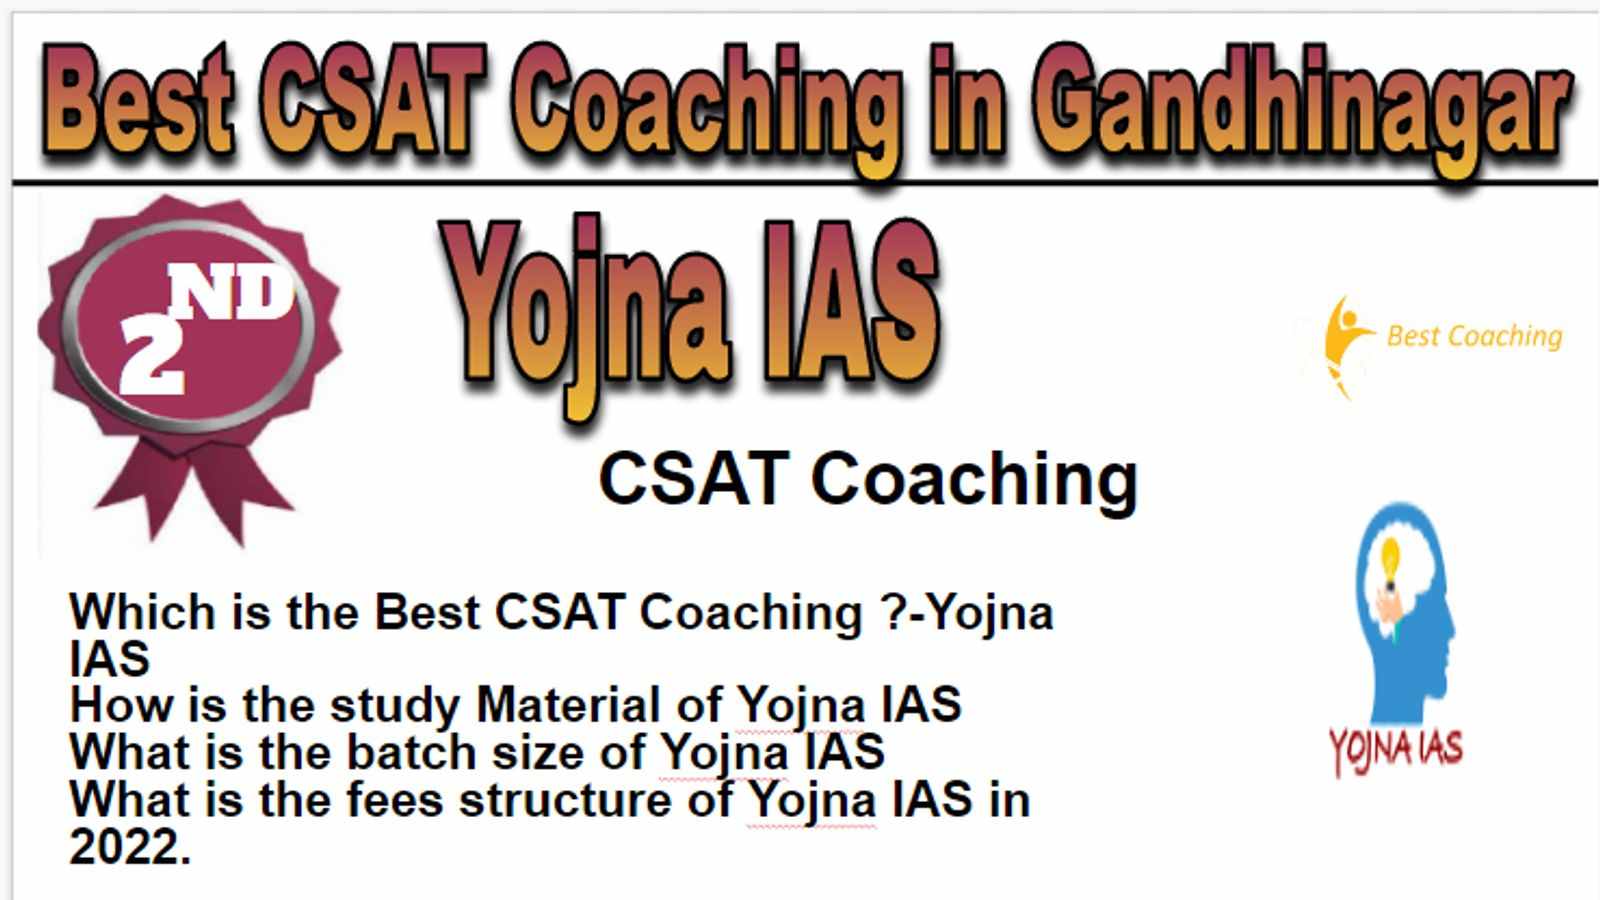 Rank 2 Best CSAT Coaching in Gandhinagar